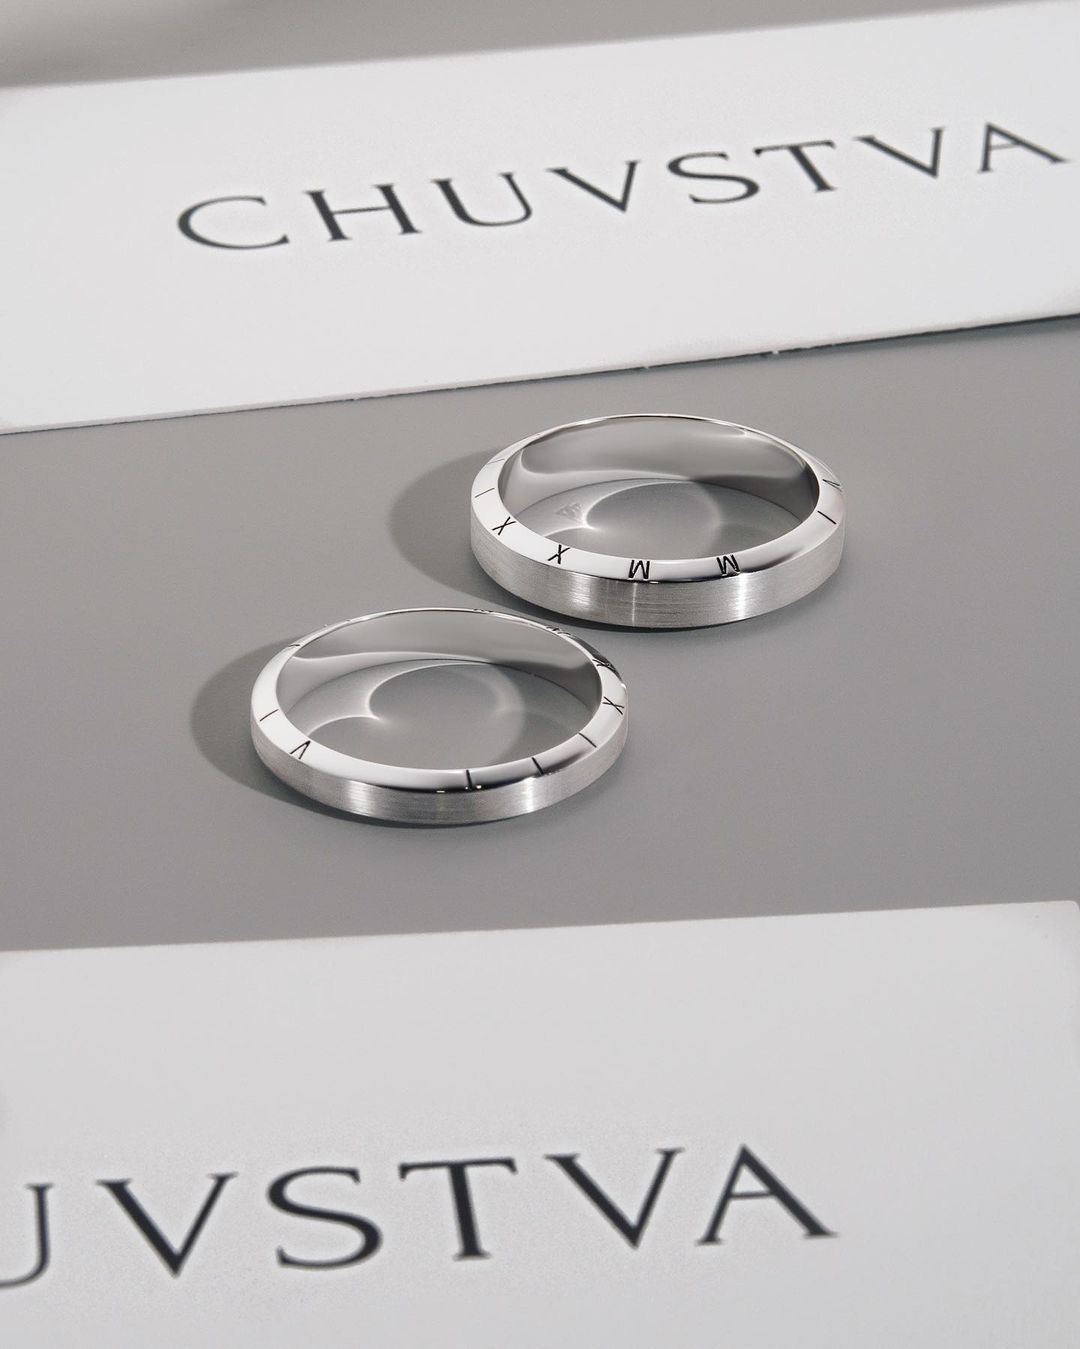 Фото: Обручальное кольцо CHUVSTVA 140